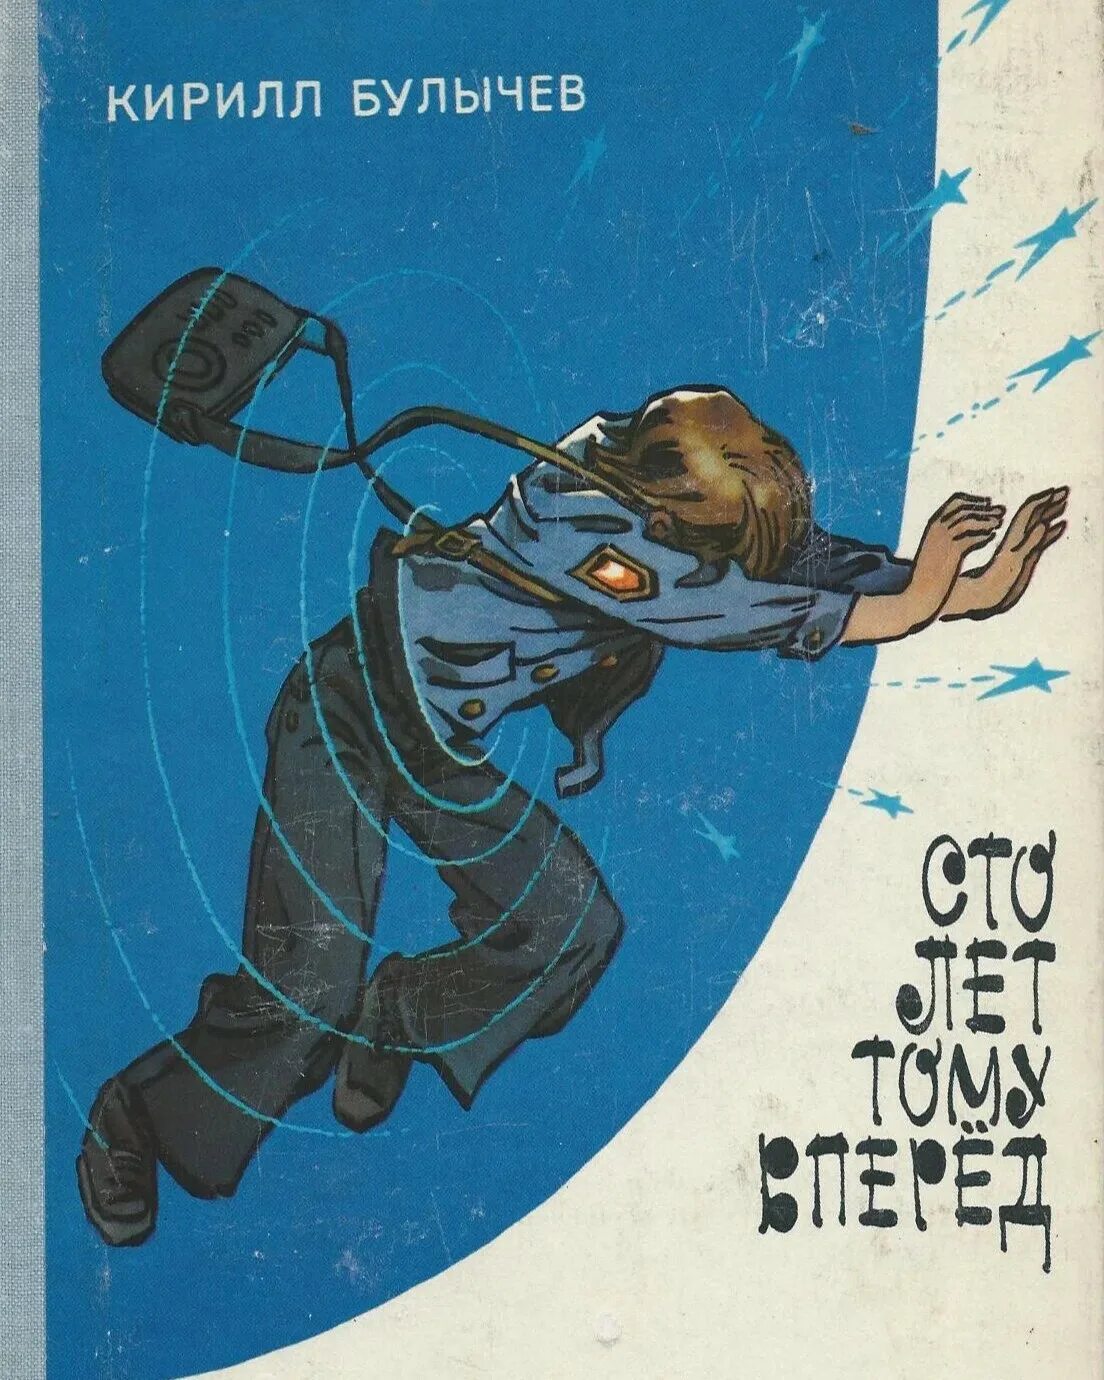 Сто лет тому вперед постер. СТО лет тому вперед Булычев 1978 первое издание.